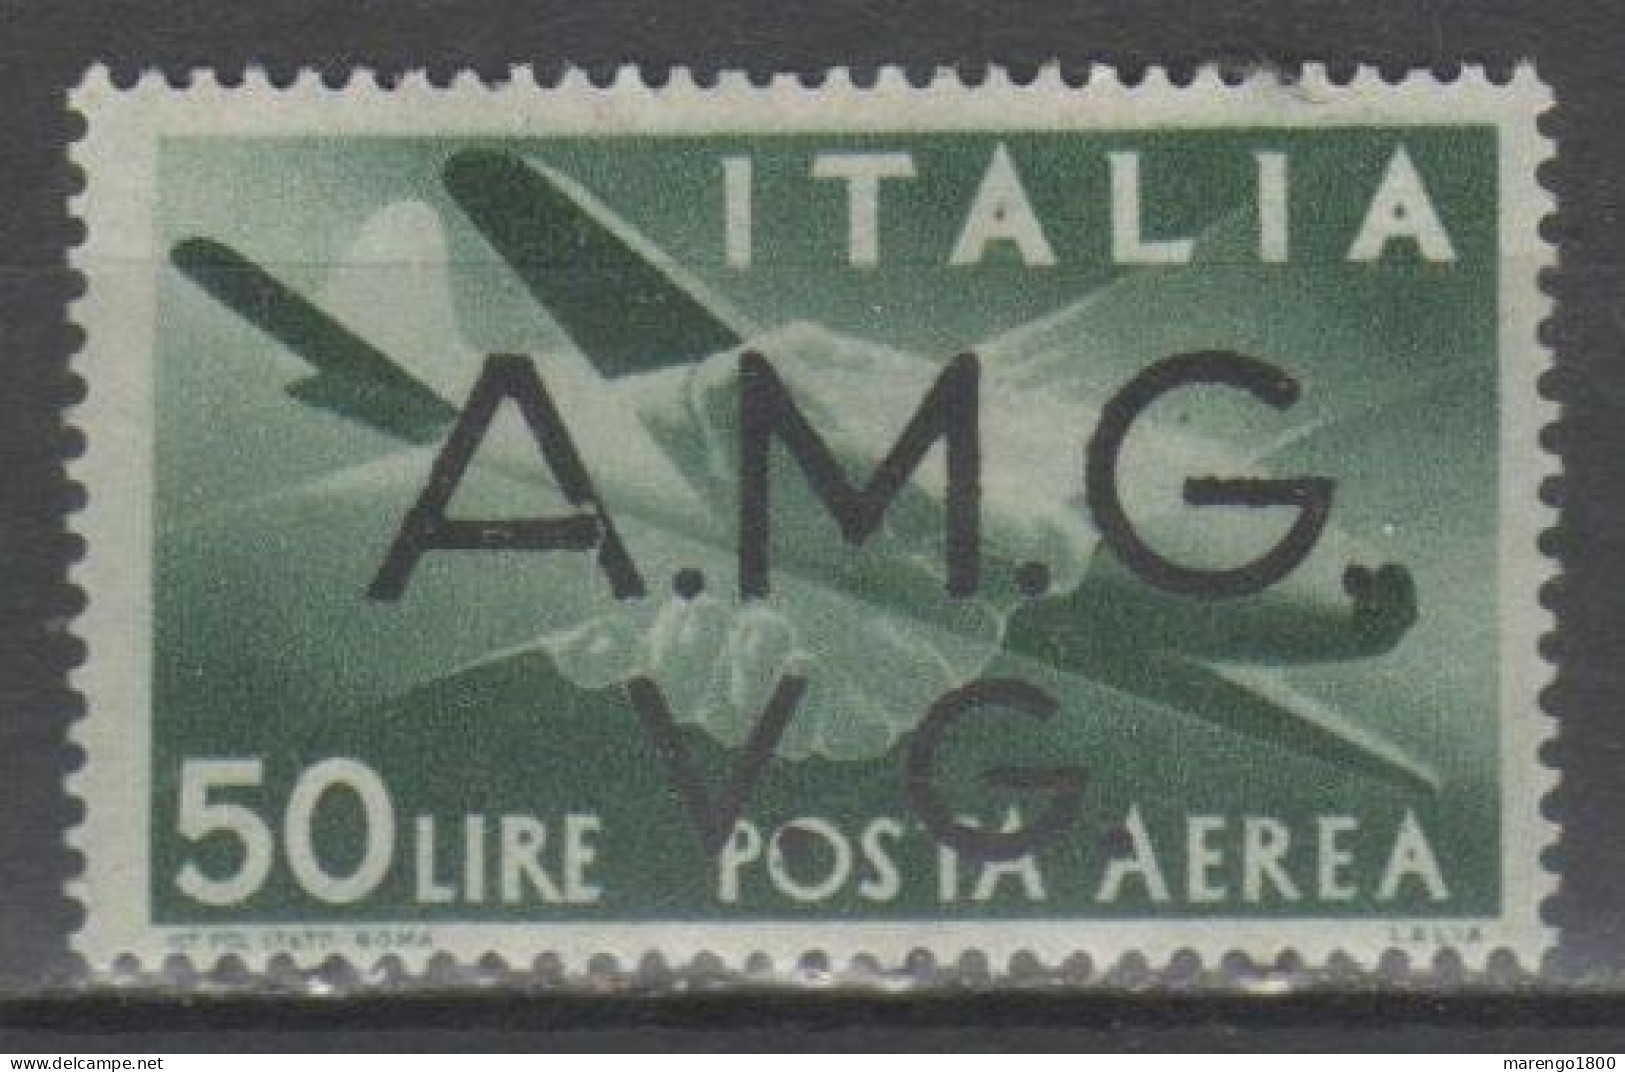 AMG VG 1946 - Posta Aerea 50 L.  * - Ongebruikt